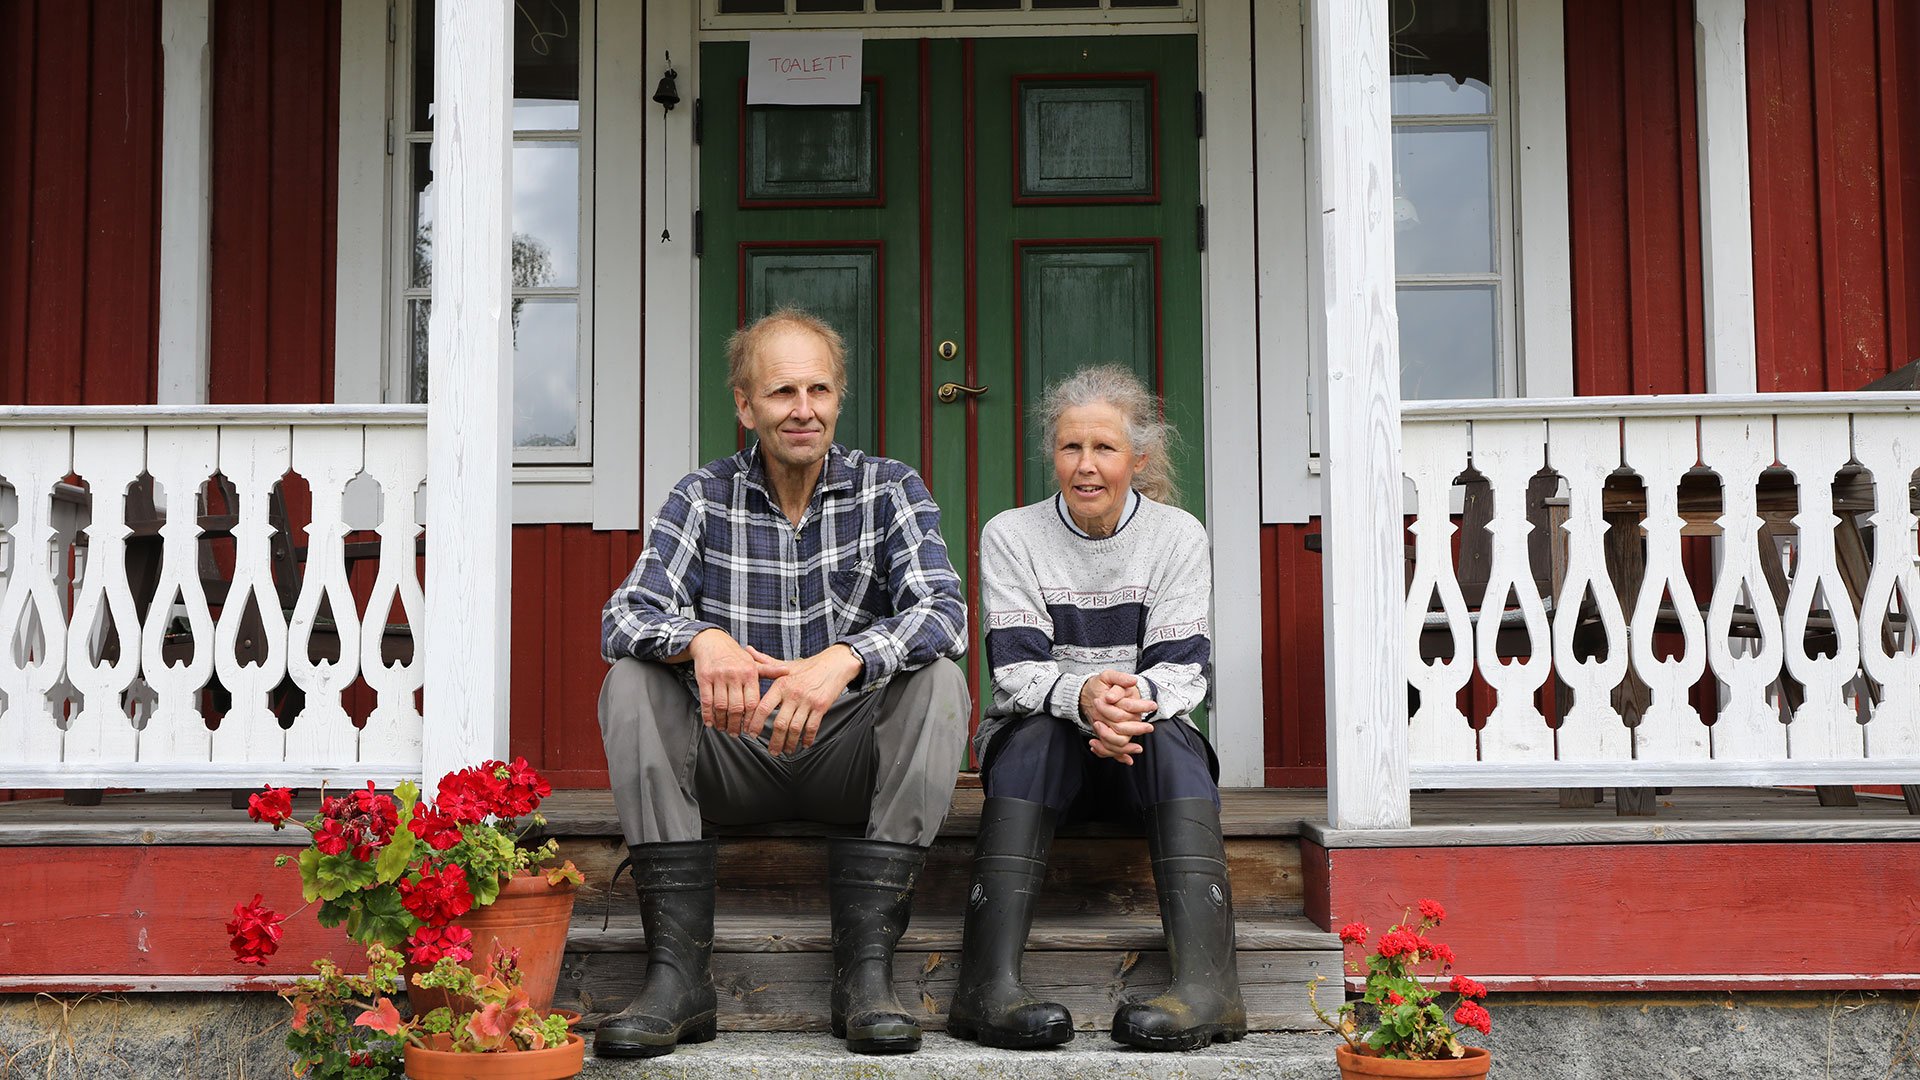 Farmers Henrik Johansson and Eva Molin in Vallsänge, Sweden